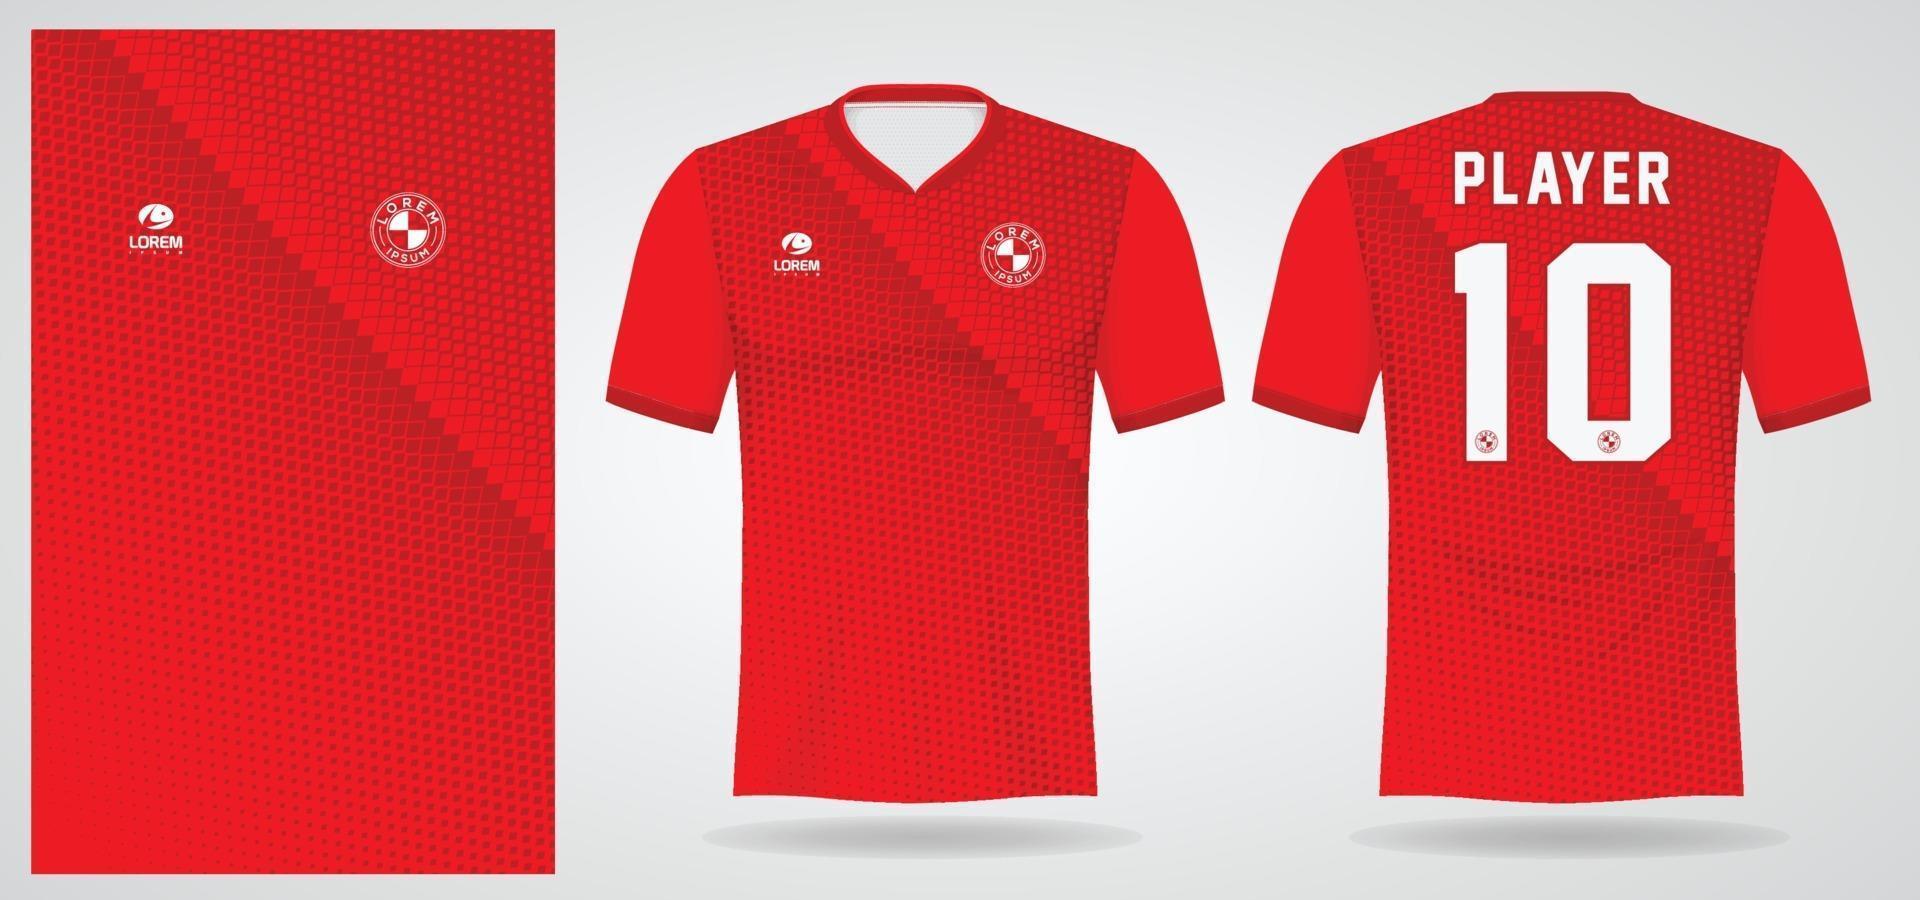 röd sport jersey mall för laguniformer och fotboll t-shirt design vektor